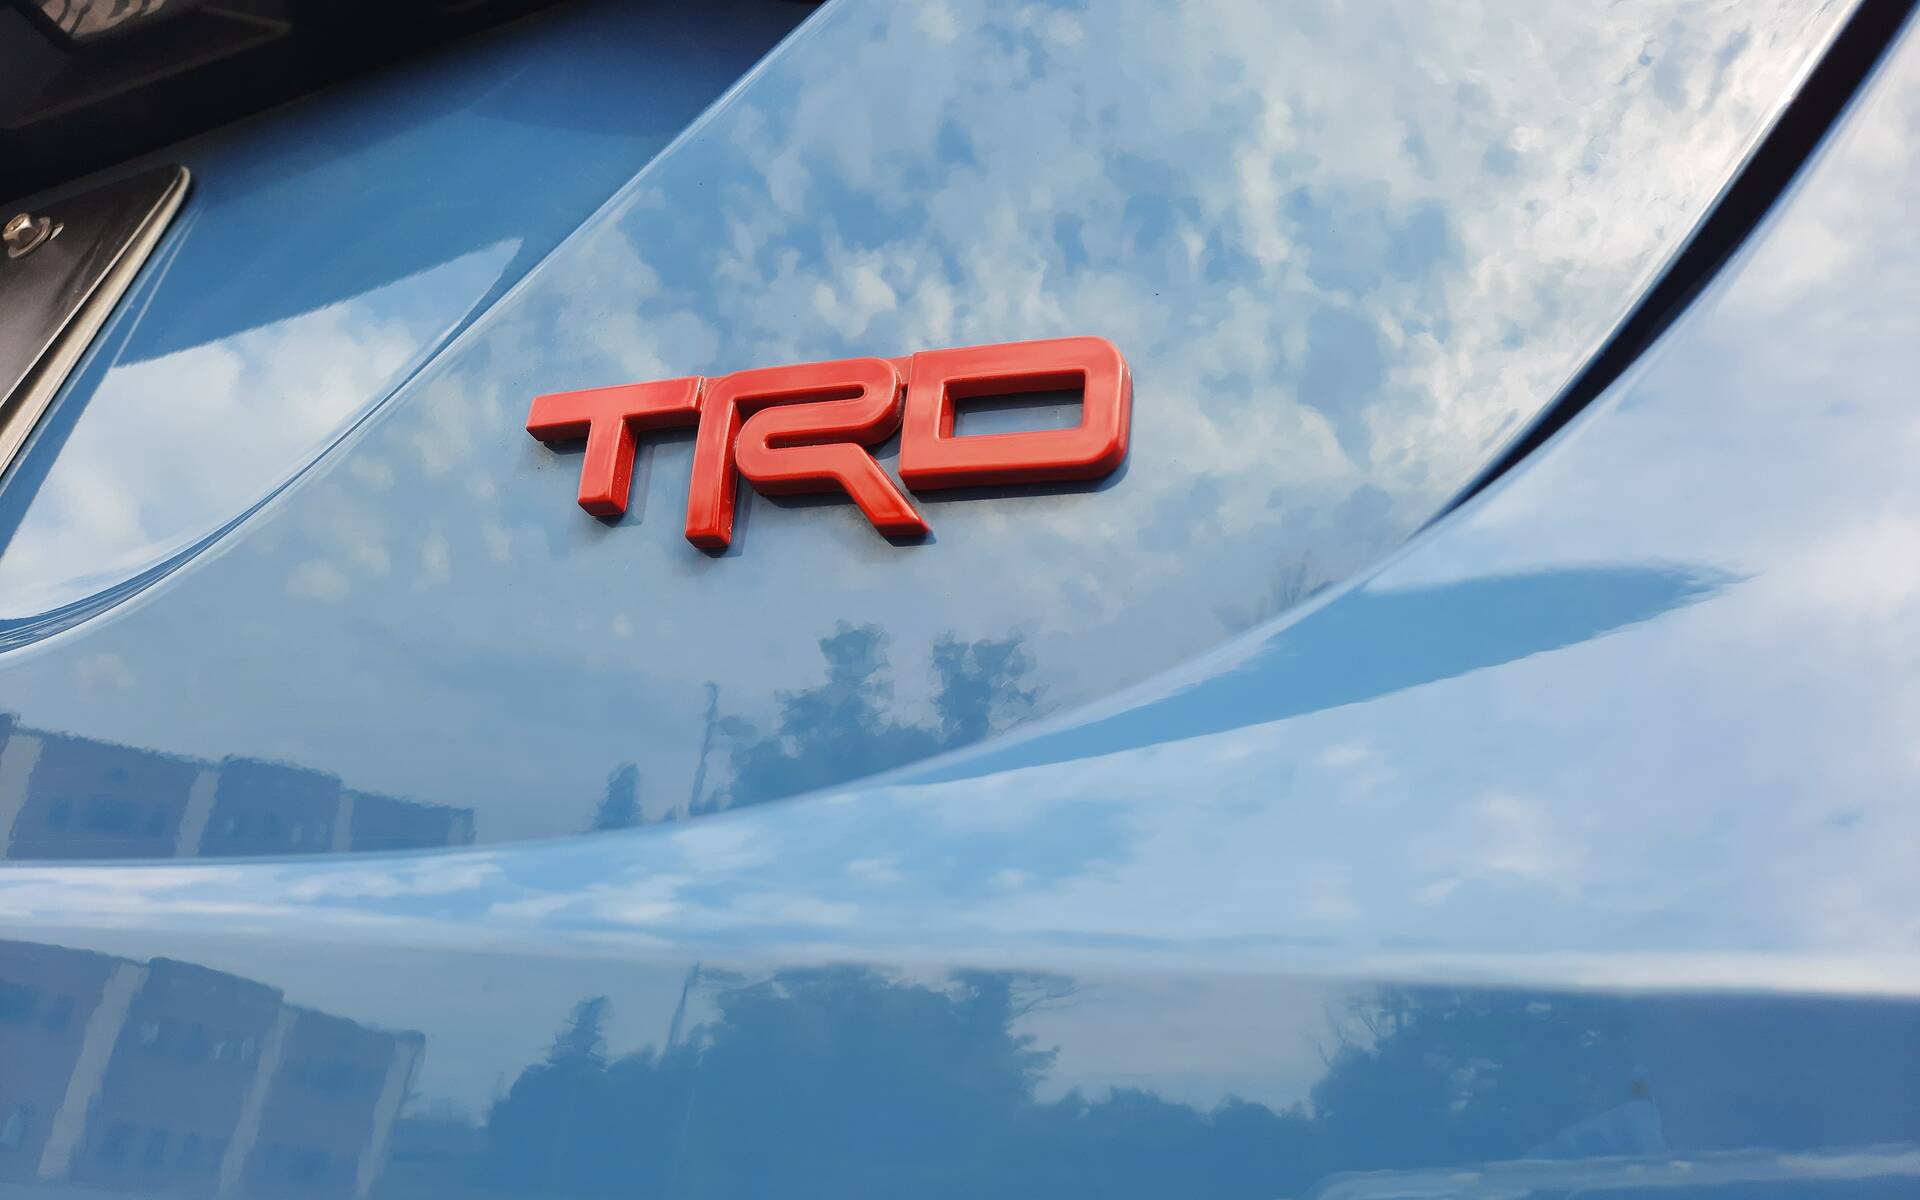 Toyota Camry TRD 2022 : quand la Camry se prend pour une sportive ! 531924-toyota-camry-trd-2022-la-plus-sportive-mais-des-compromis-agacants